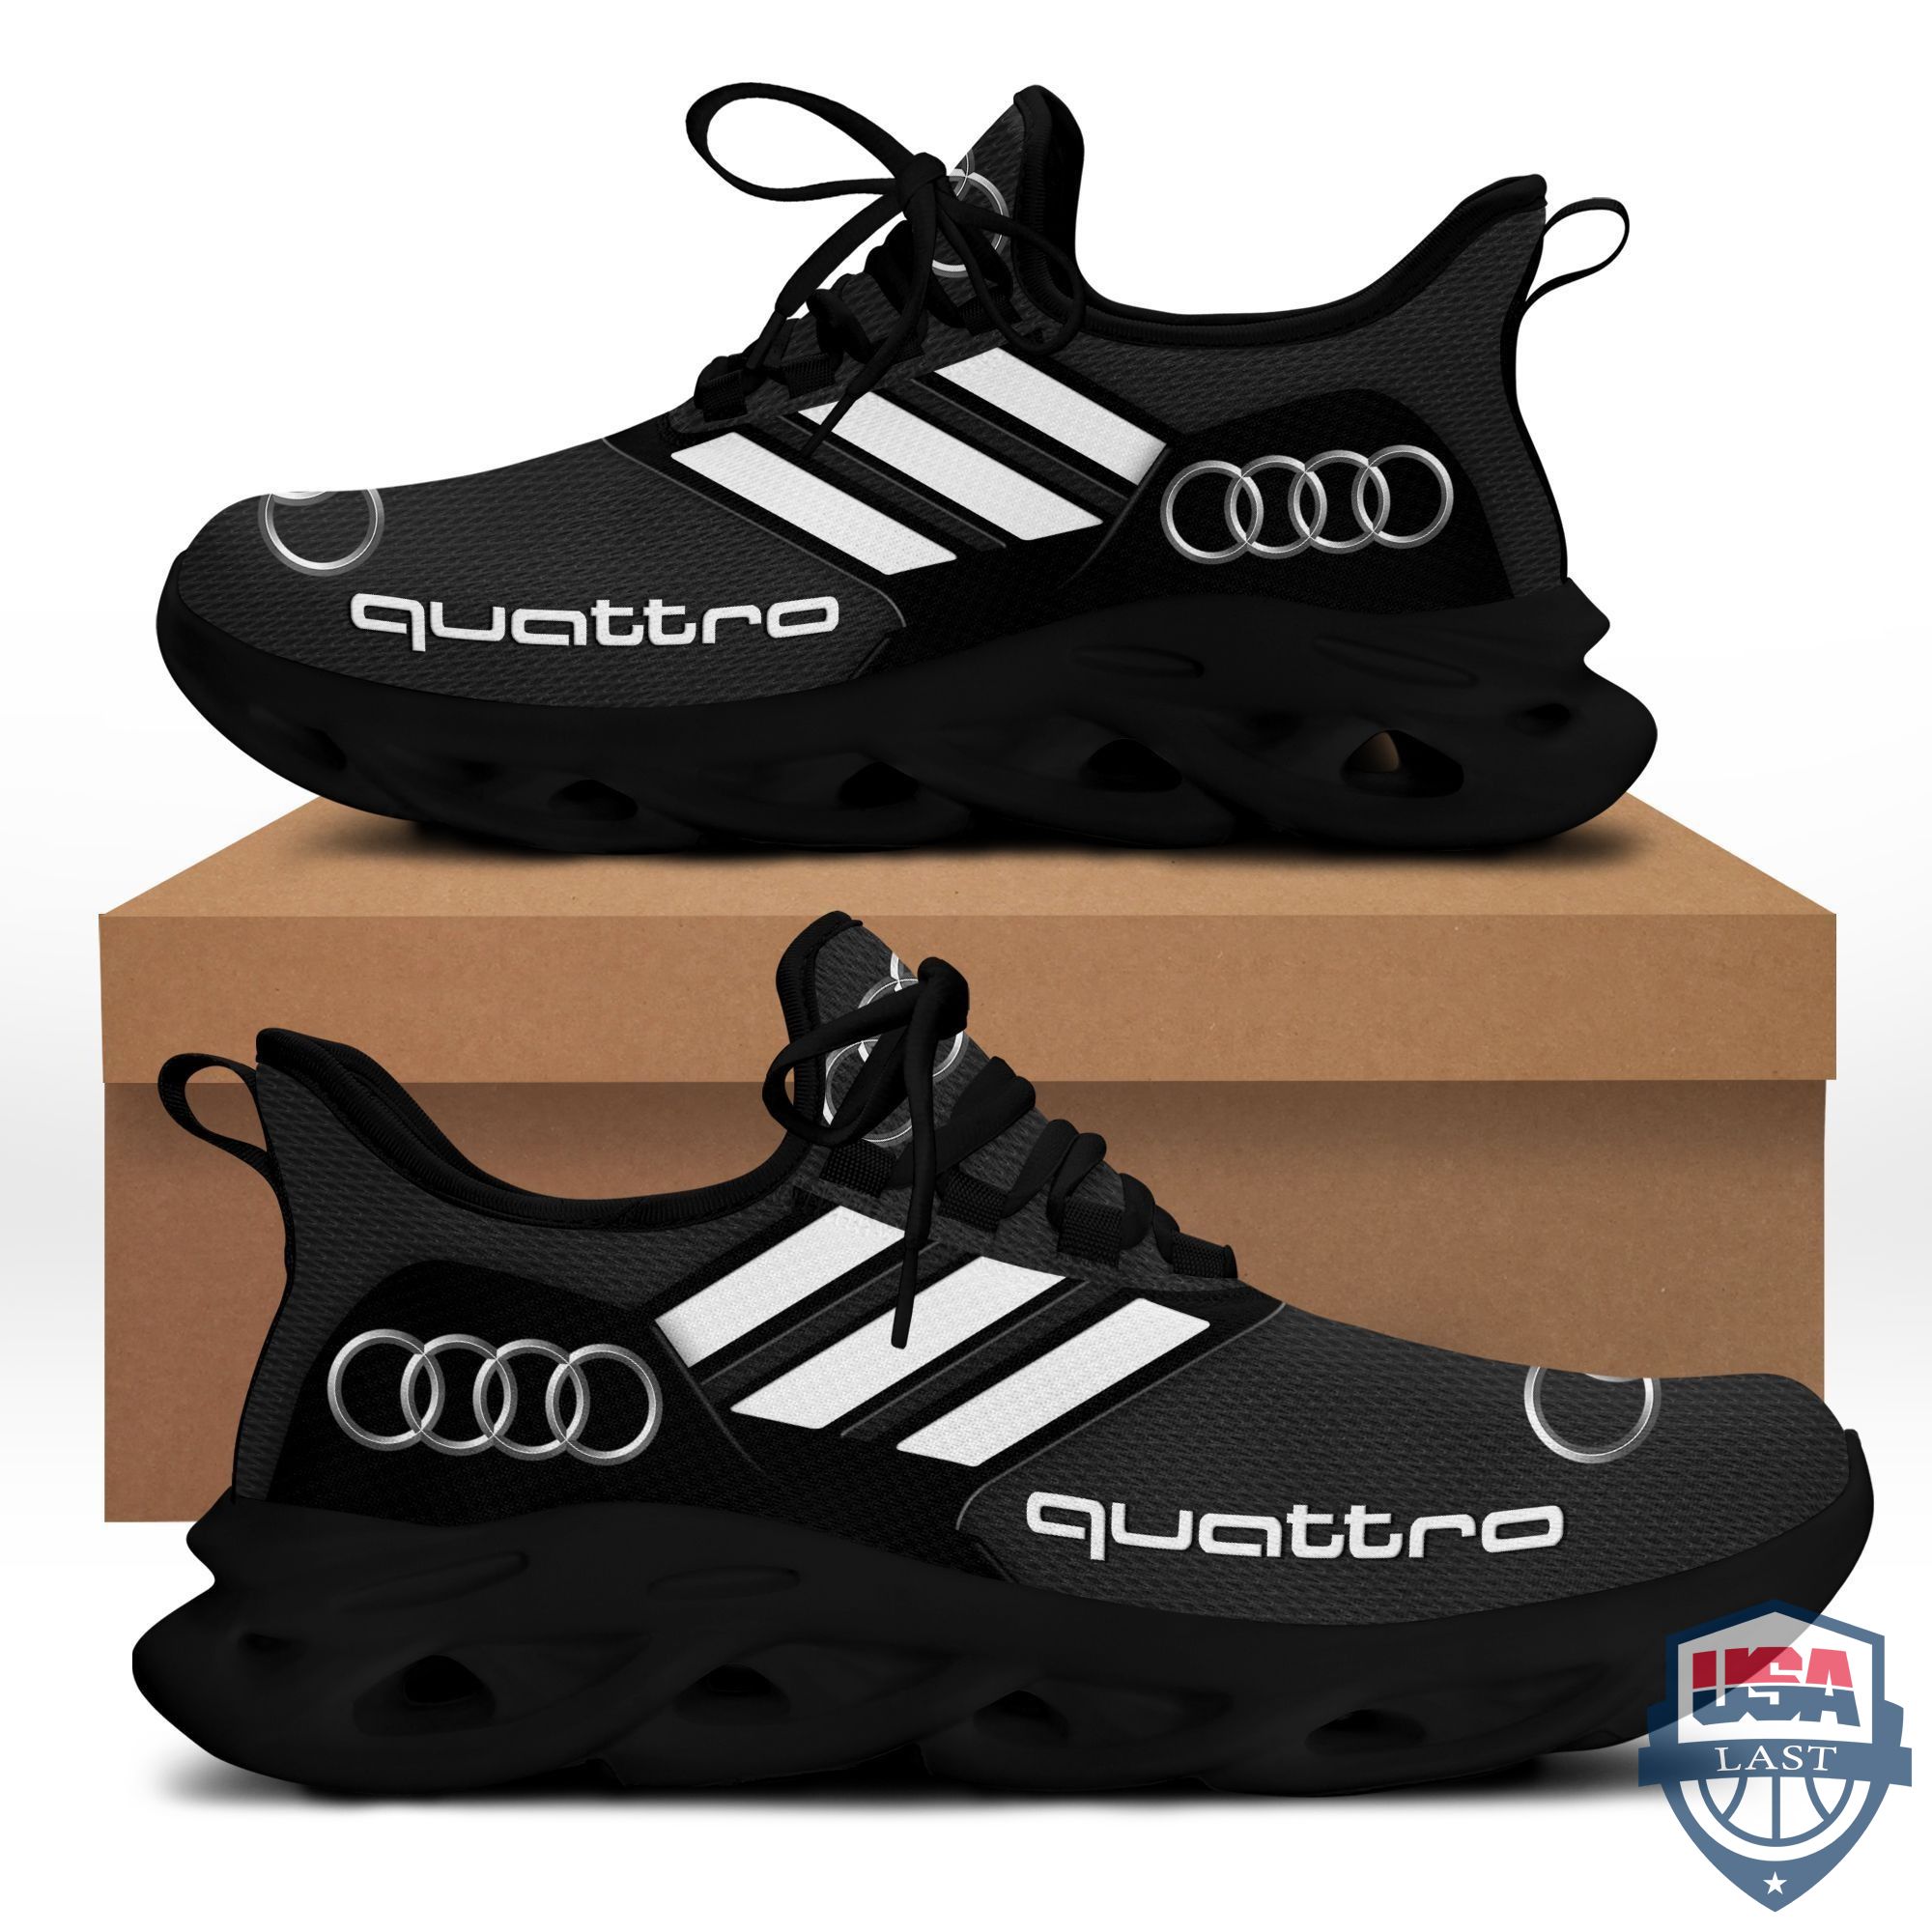 Audi Quattro Sport Shoes Max Soul Sneaker Black Version For Men, Women